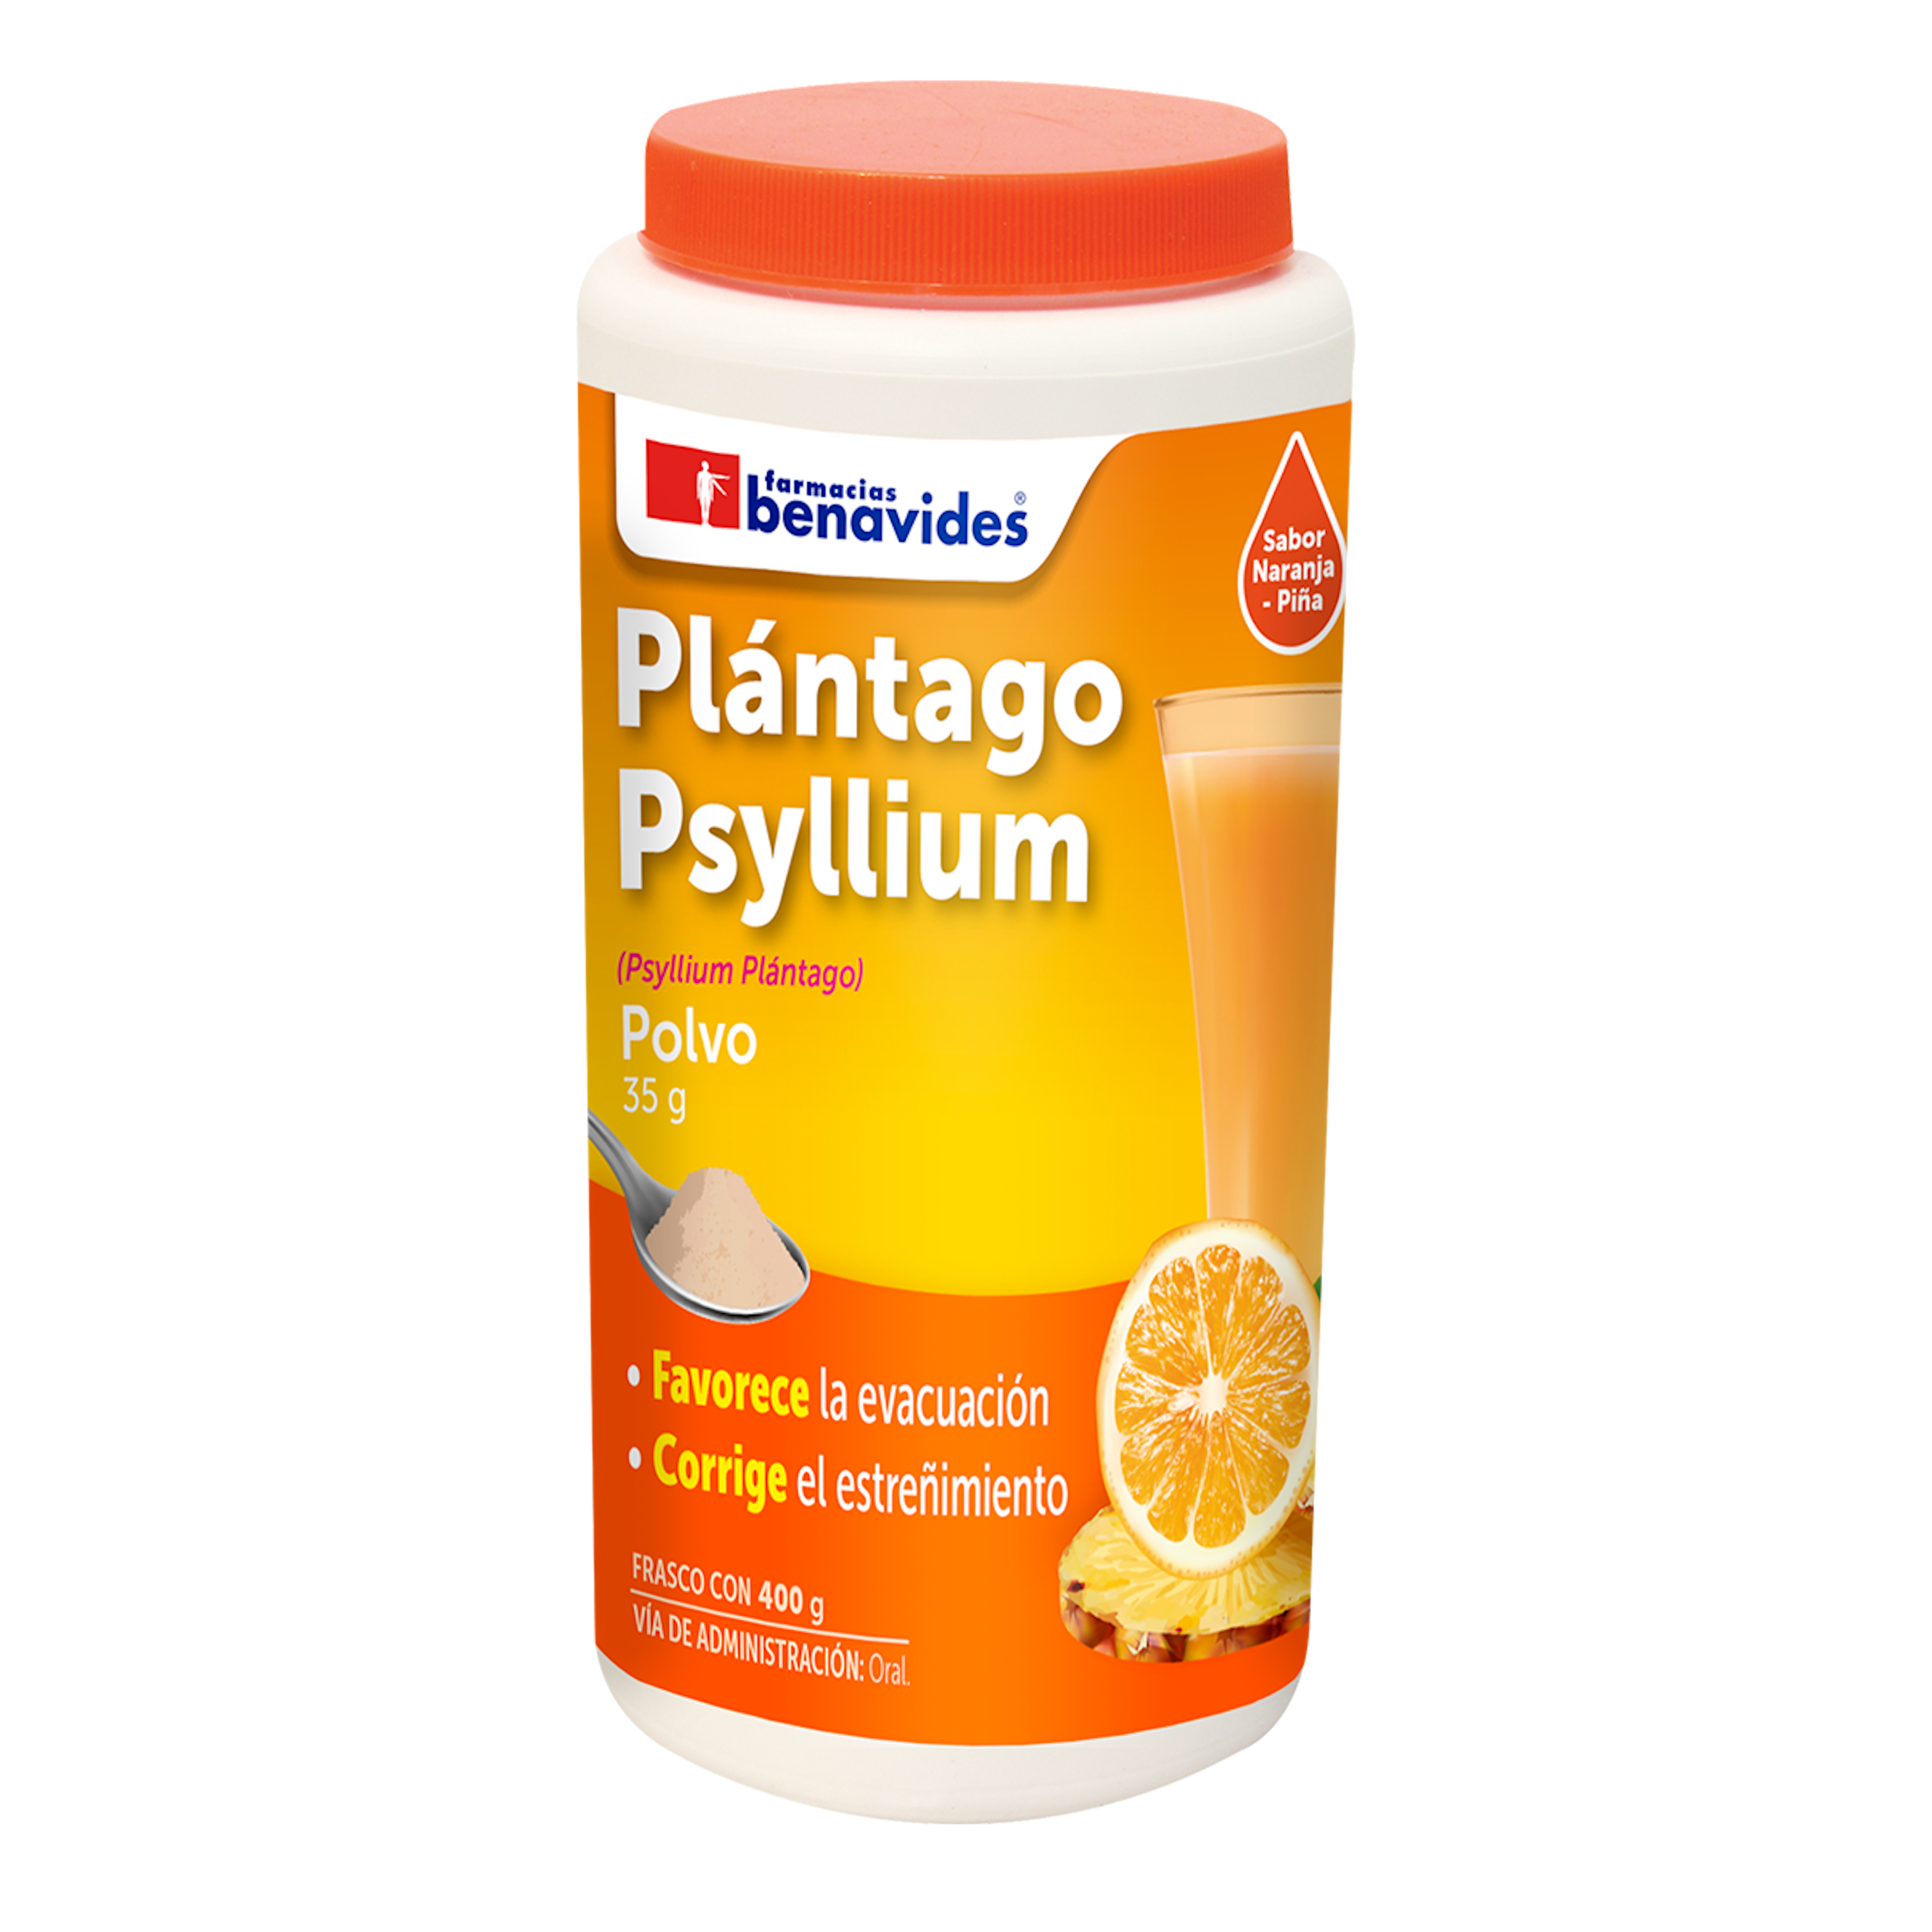 Plantago Psyllium